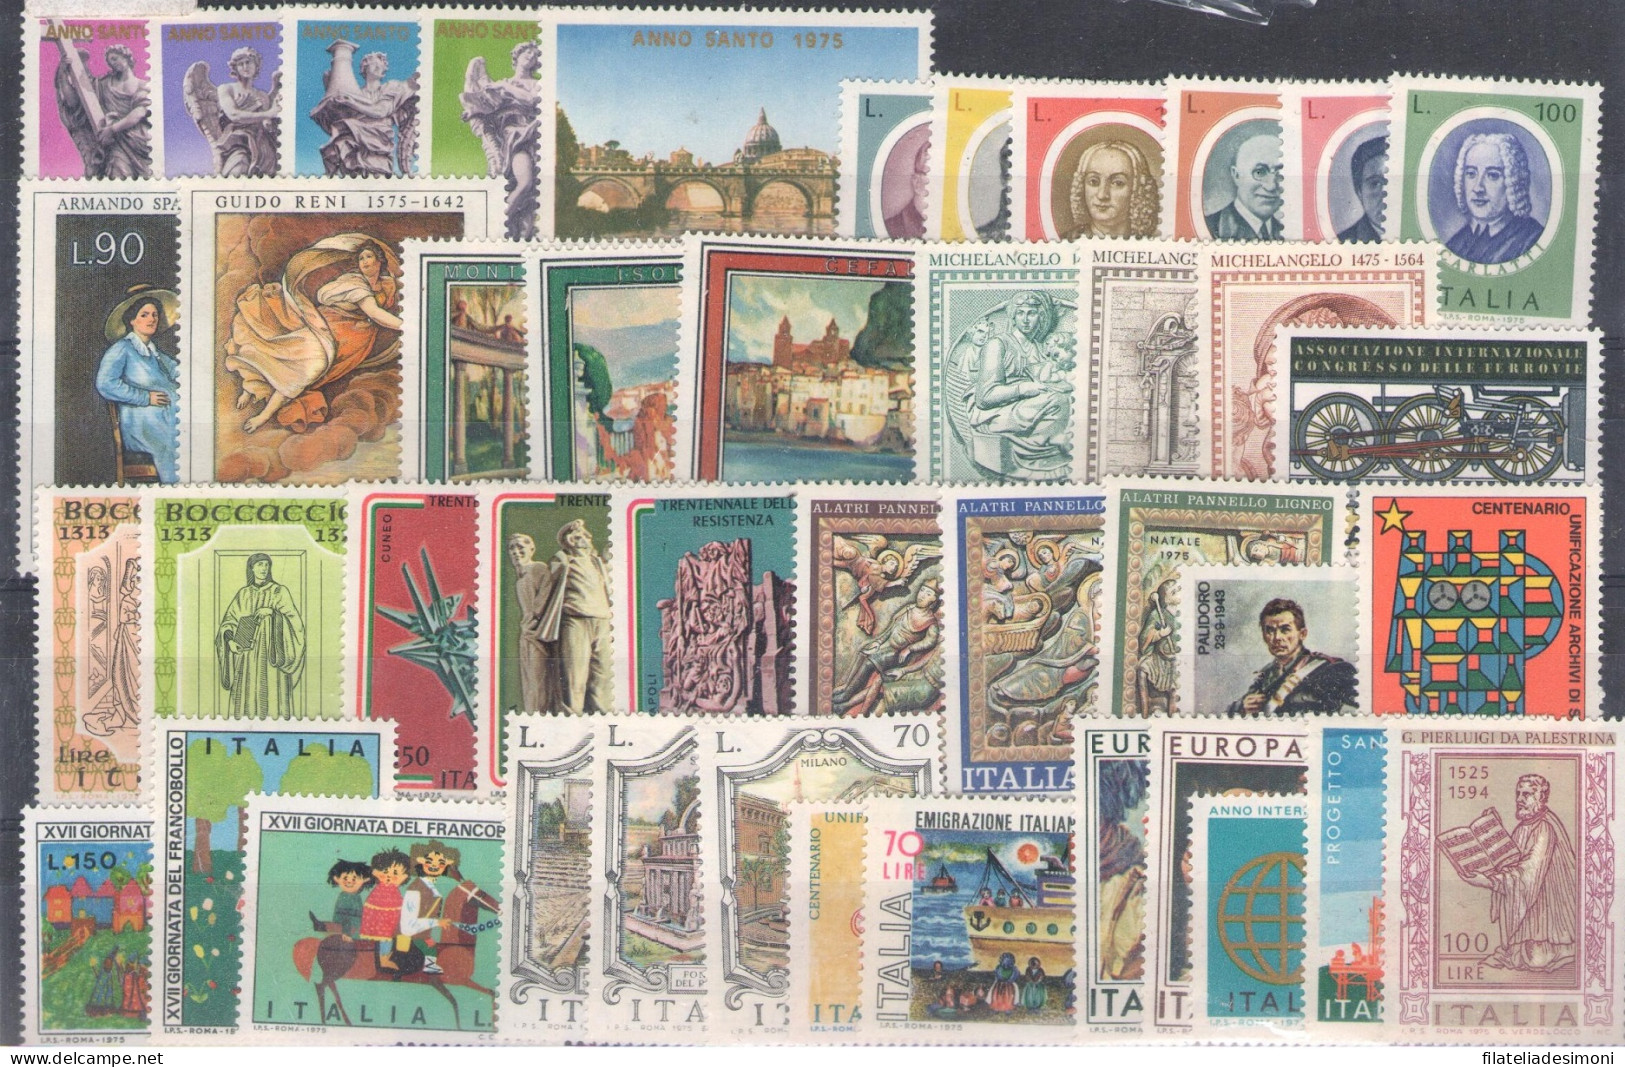 1970-1979 Italia Repubblica, Annate Complete 378 valori, francobolli nuovi - MNH**